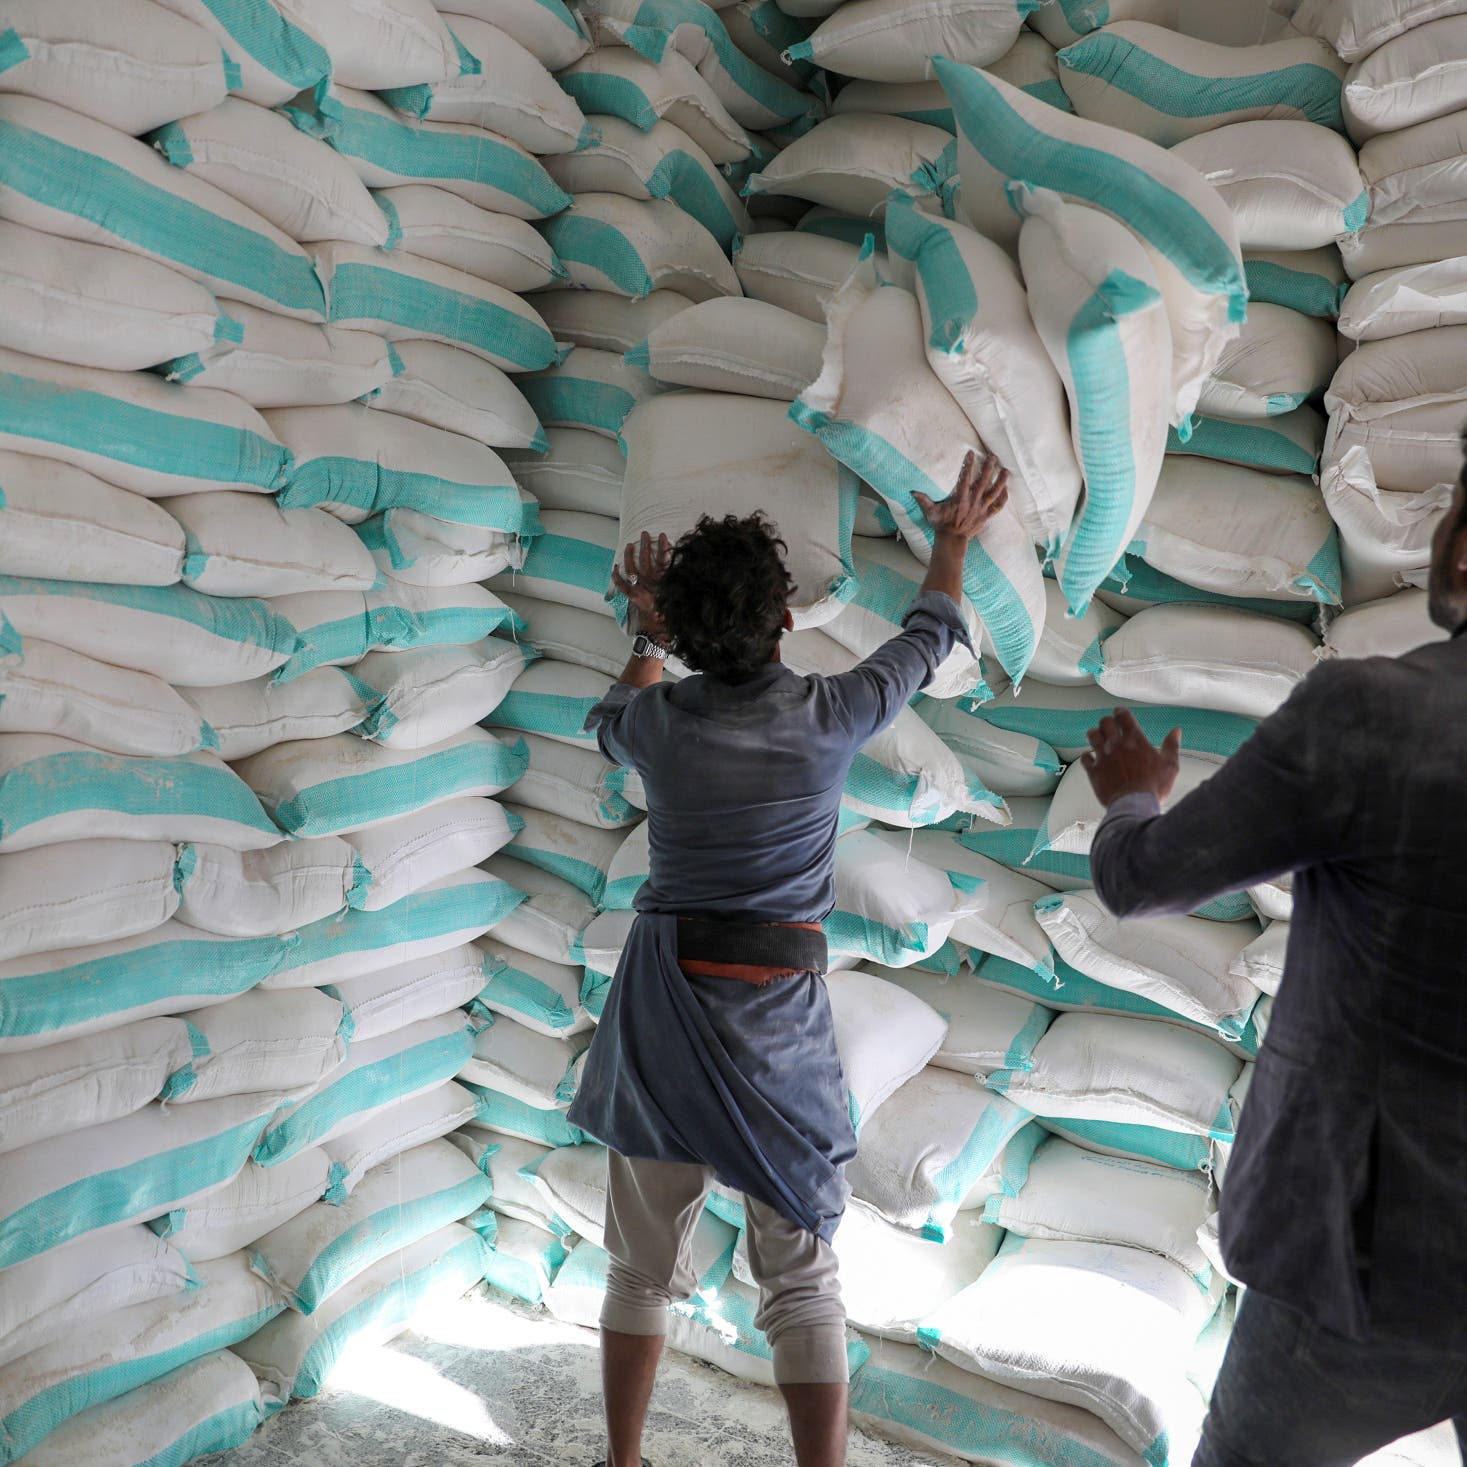 الأمم المتحدة تضطر لخفض المساعدات لليمن رغم كورونا